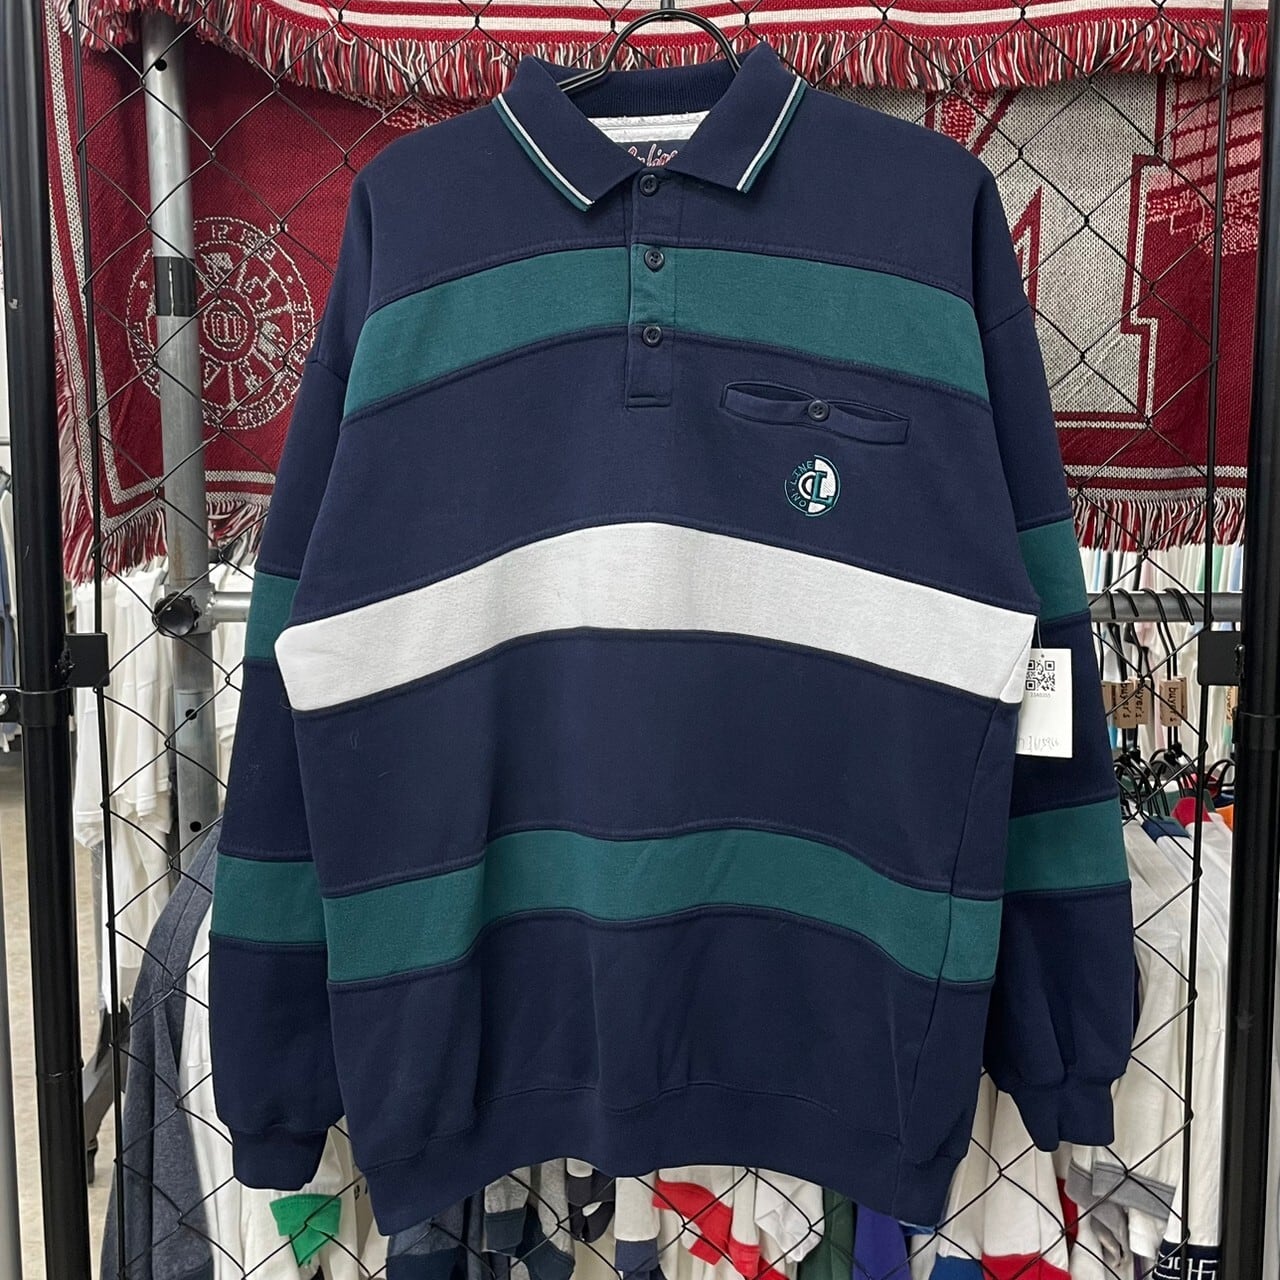 90s-ラガーシャツ 長袖 ボーダー ワンポイント ロゴ 刺繍 古着 古着屋